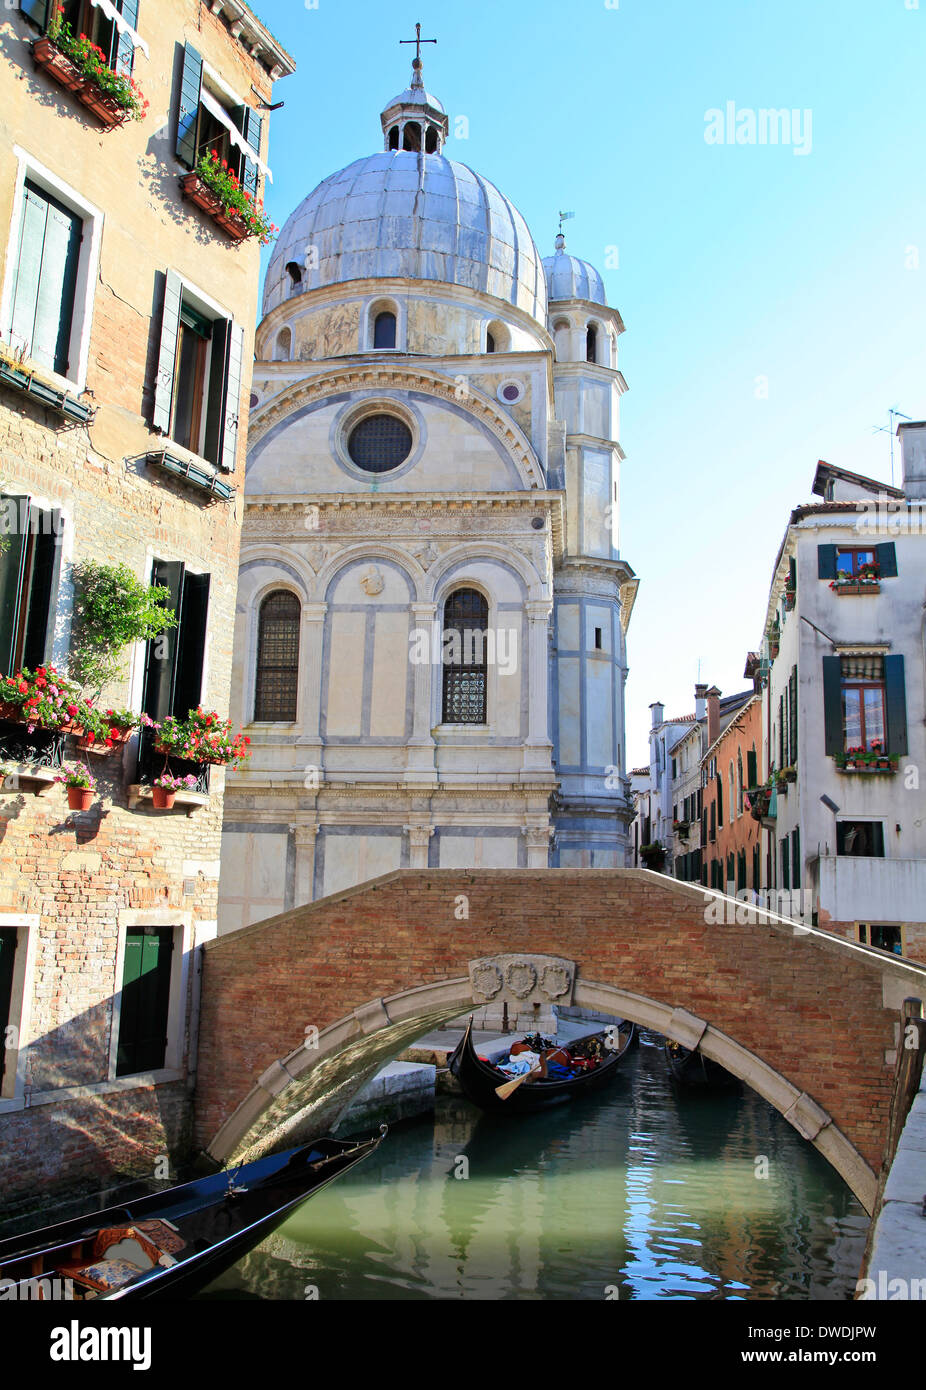 Church of Santa Maria dei Miracoli, Venice, Italy Stock Photo